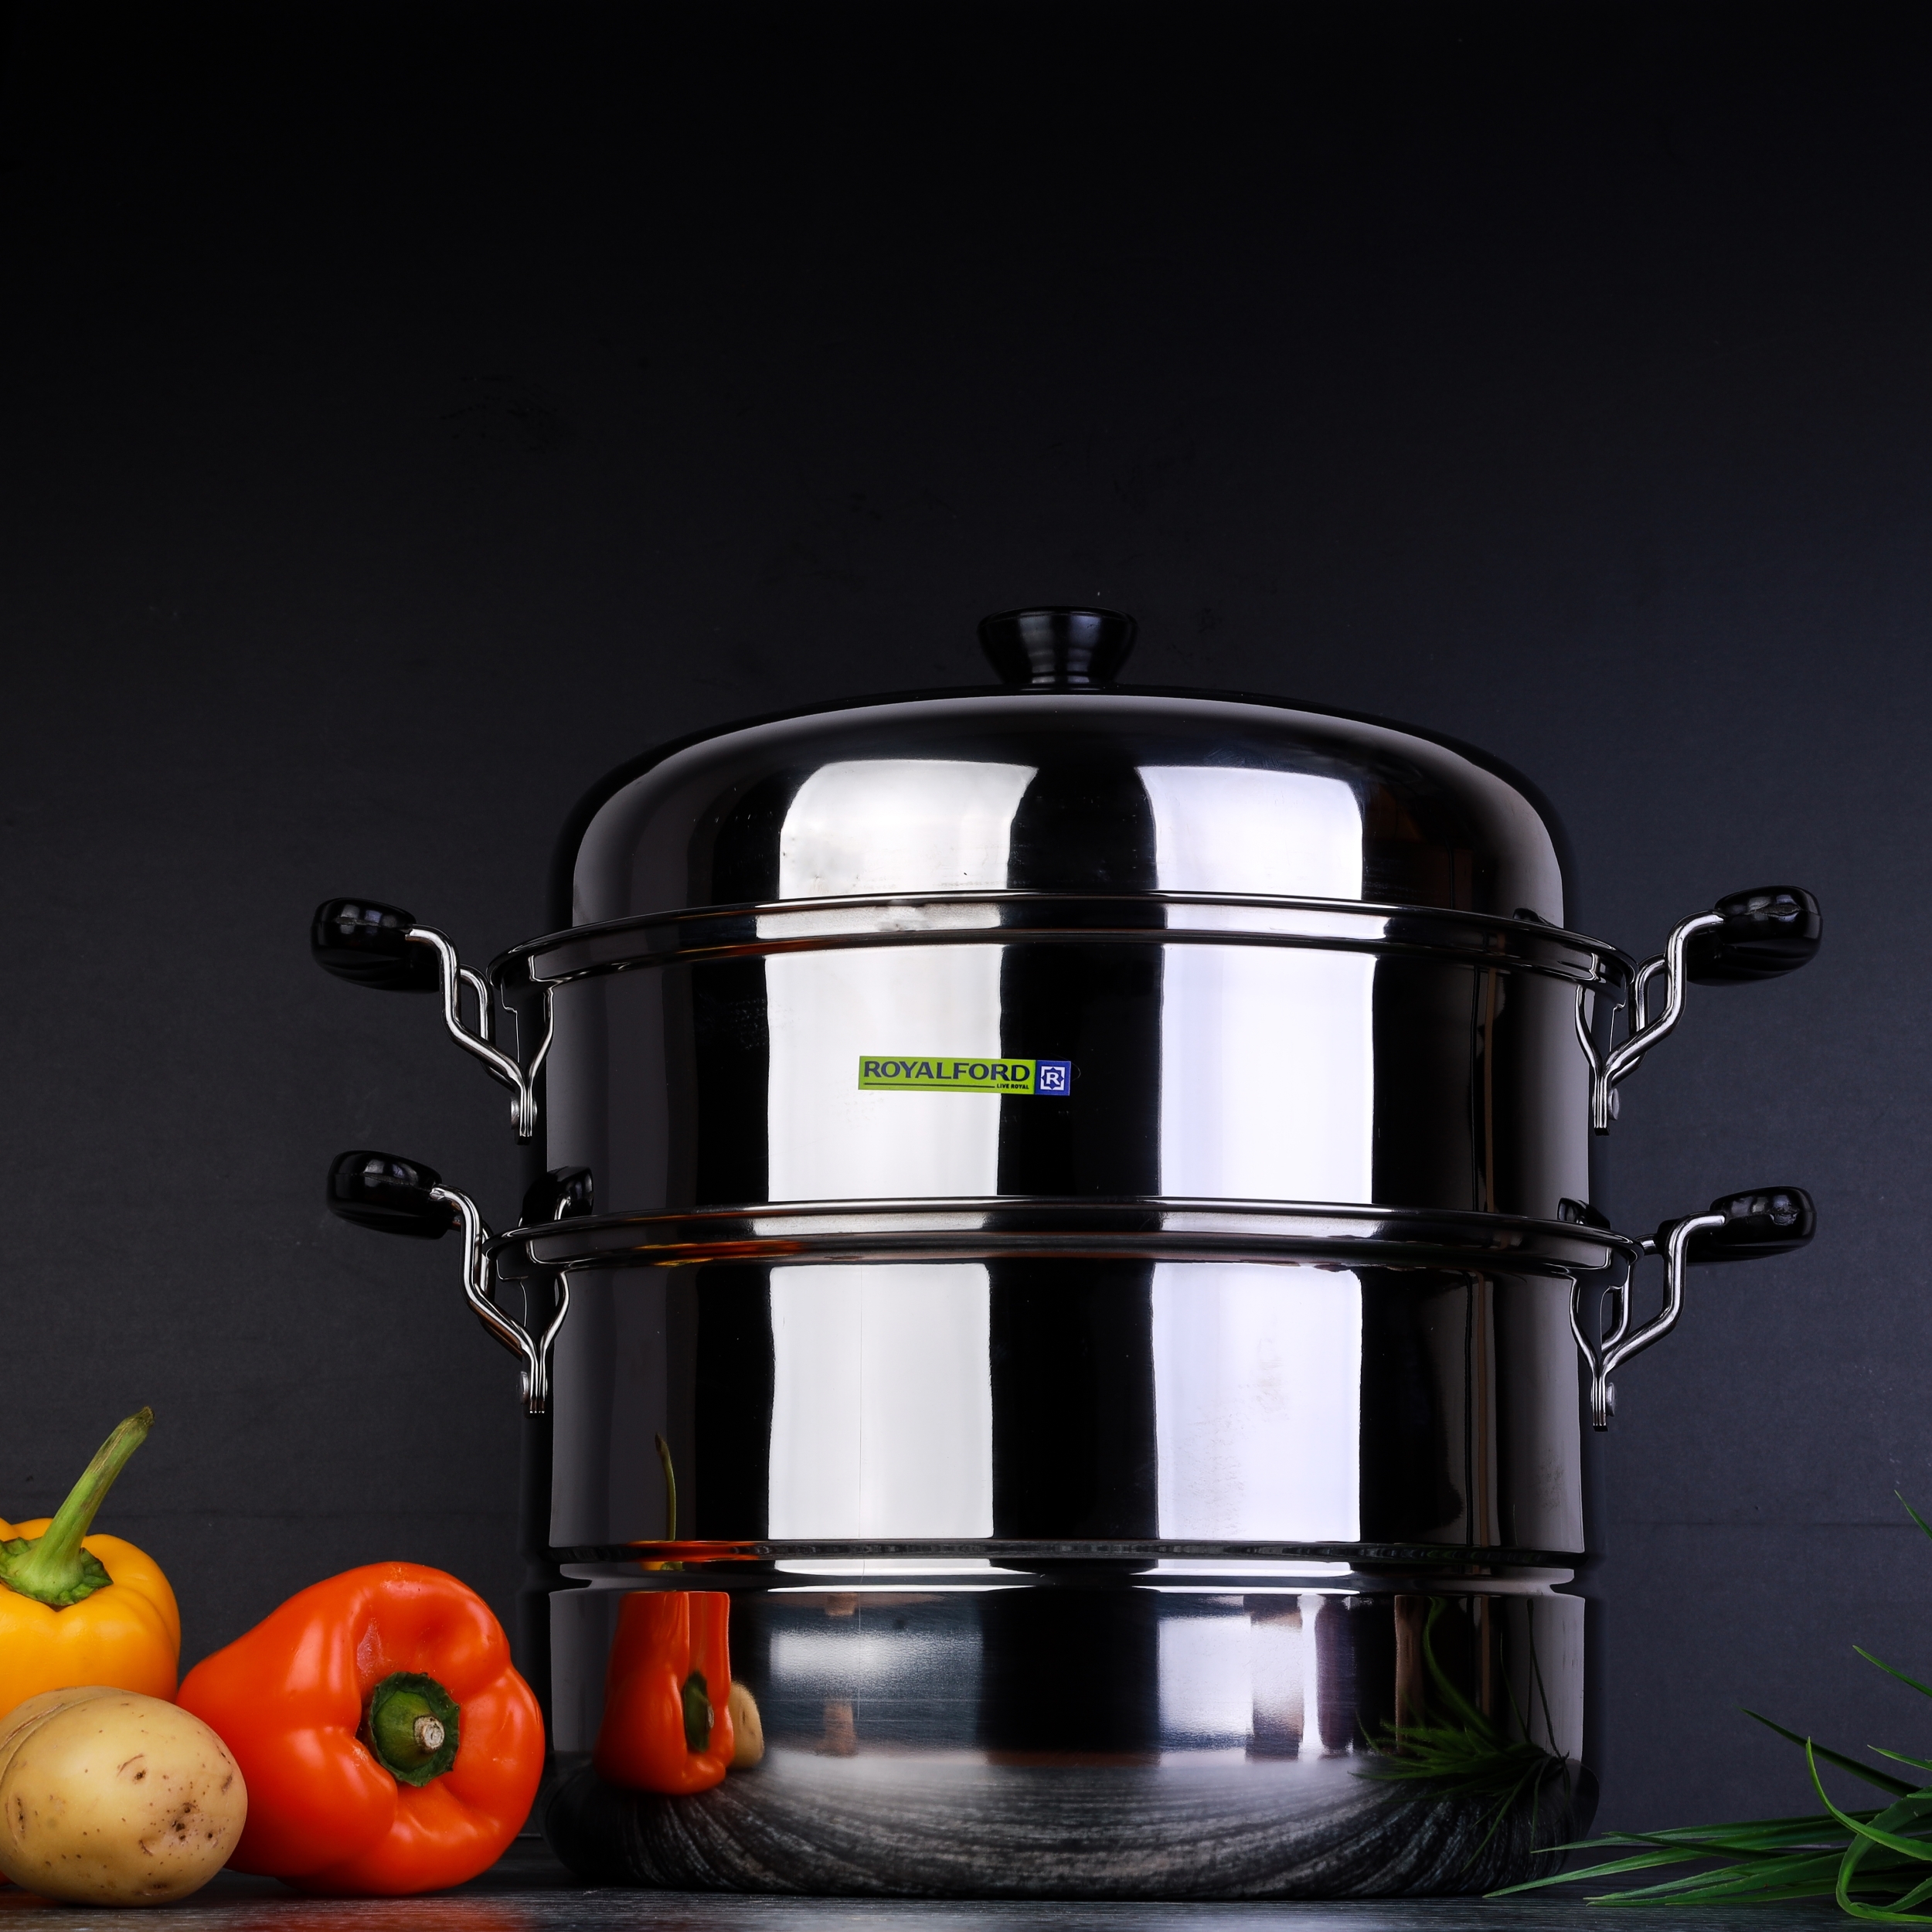 قدر بخاري طبقتين ( 9 لتر ) - فضي  Royalford - 2 Layer Stainless Steel Steamer - Steamer Pot, Heat Resistant With Durable & Comfortable